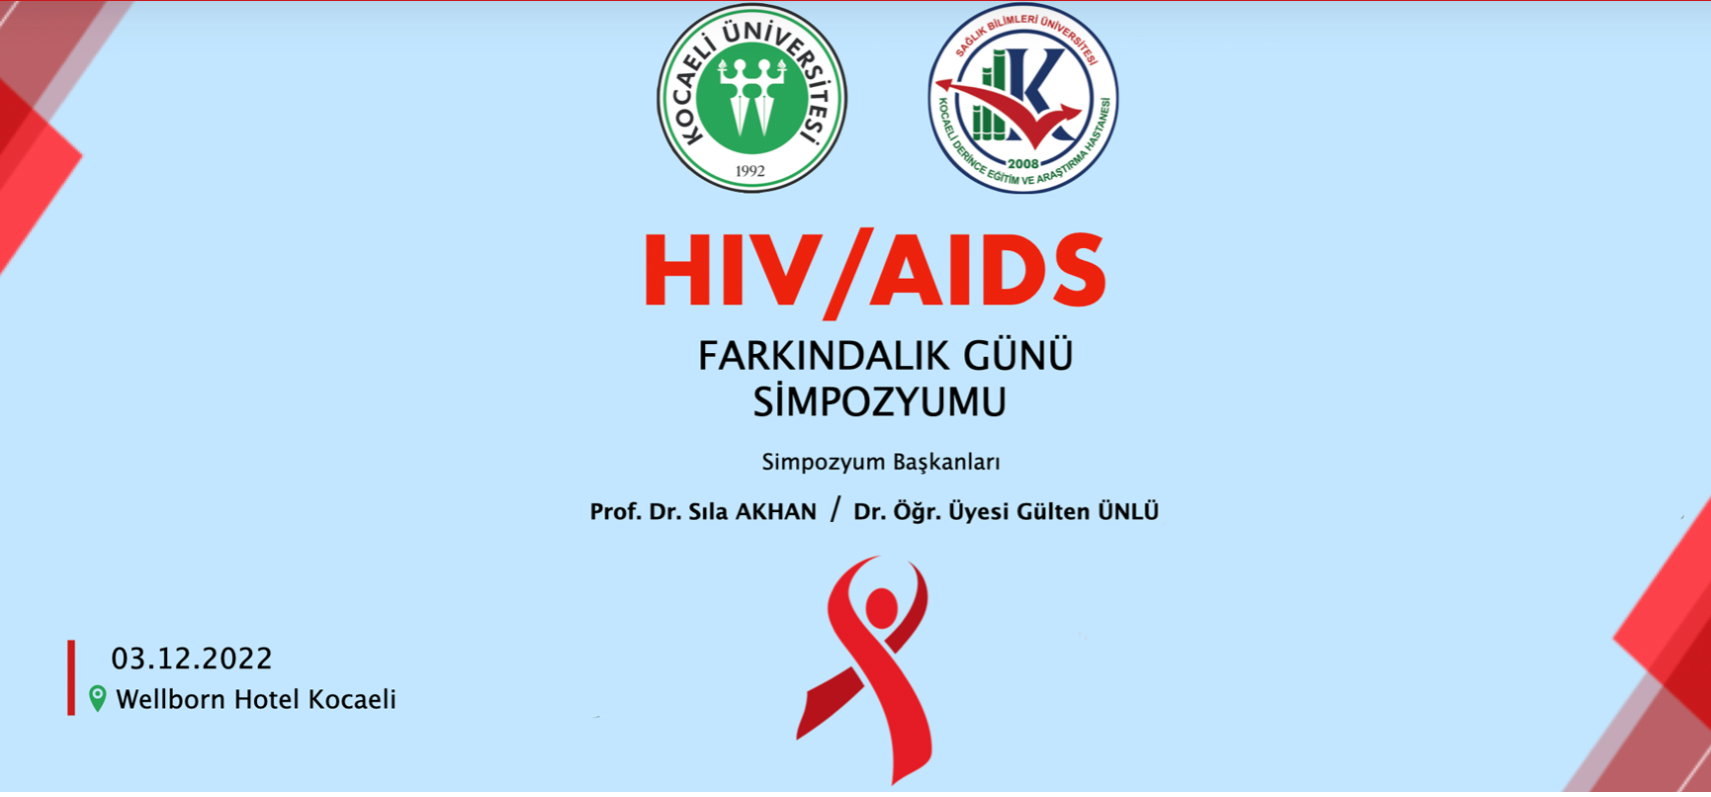 HIV/AIDS Farkındalık Günü Simpozyumu